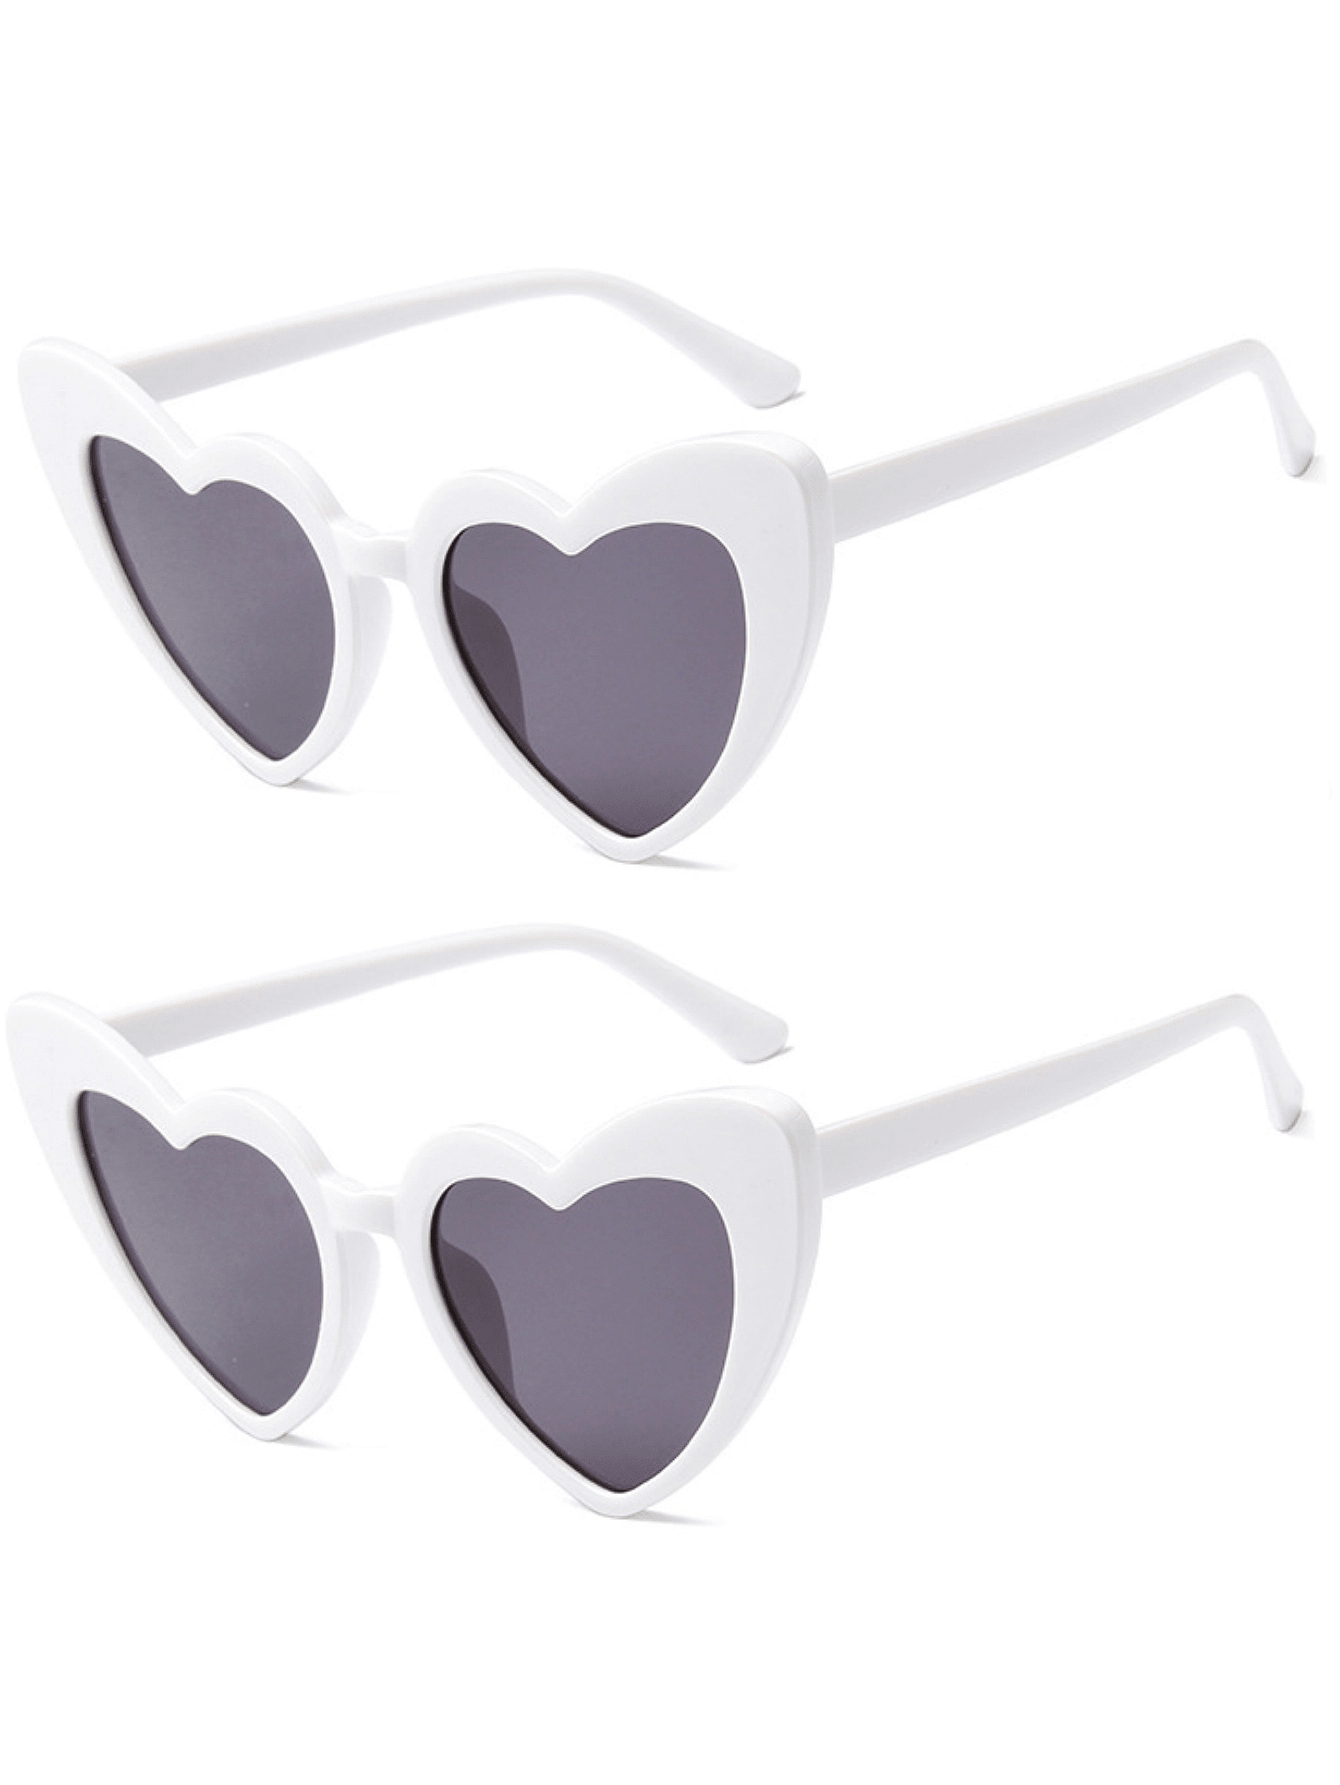 2 шт. солнцезащитные очки в форме сердца для женщин фото